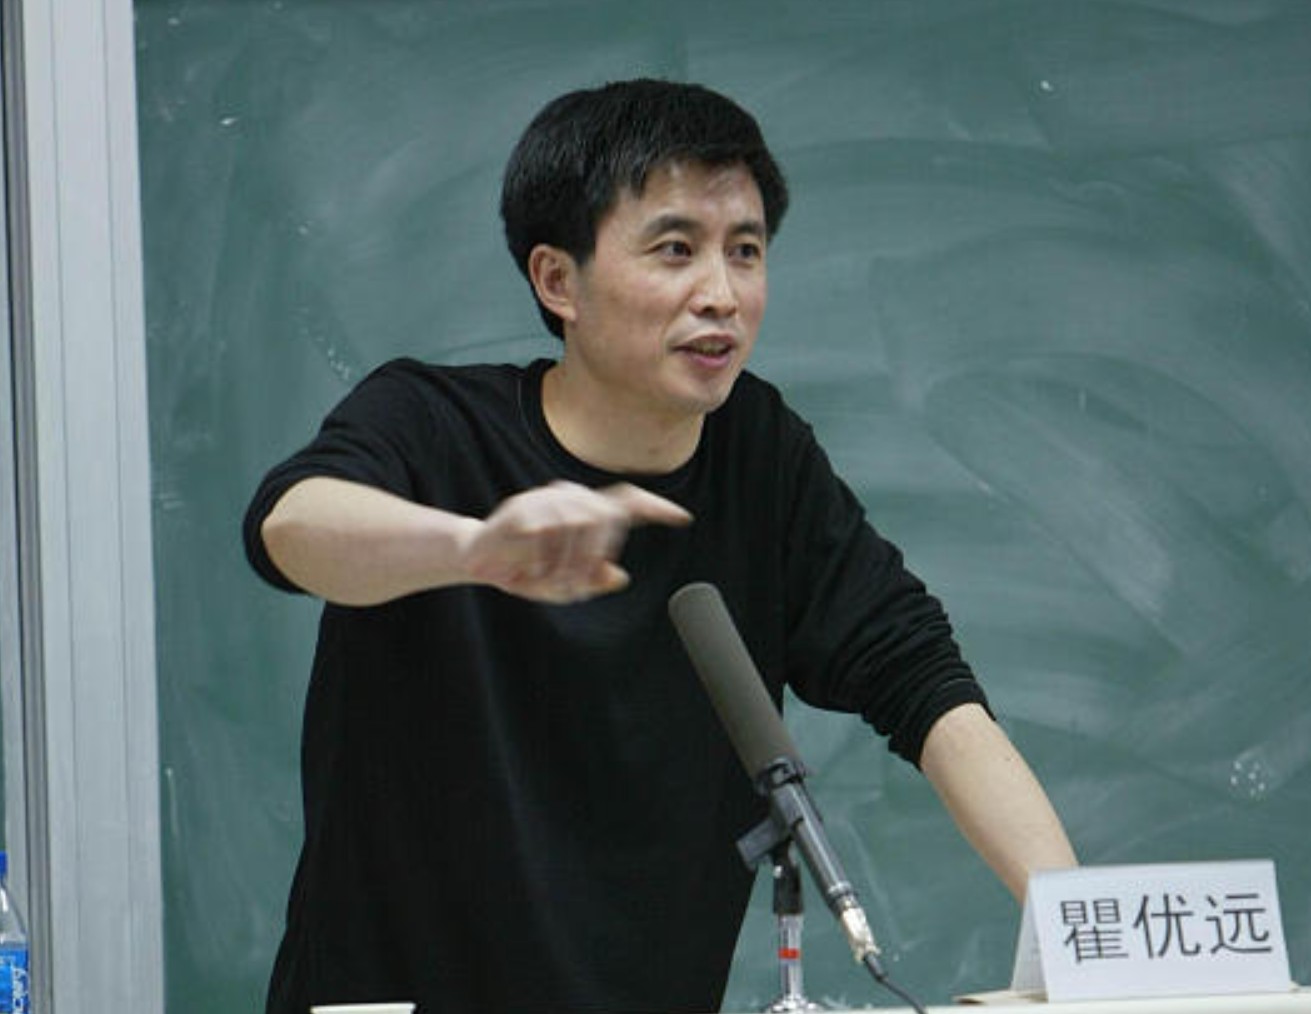 入狱5年后,原体坛周报社长瞿优远被提请假释